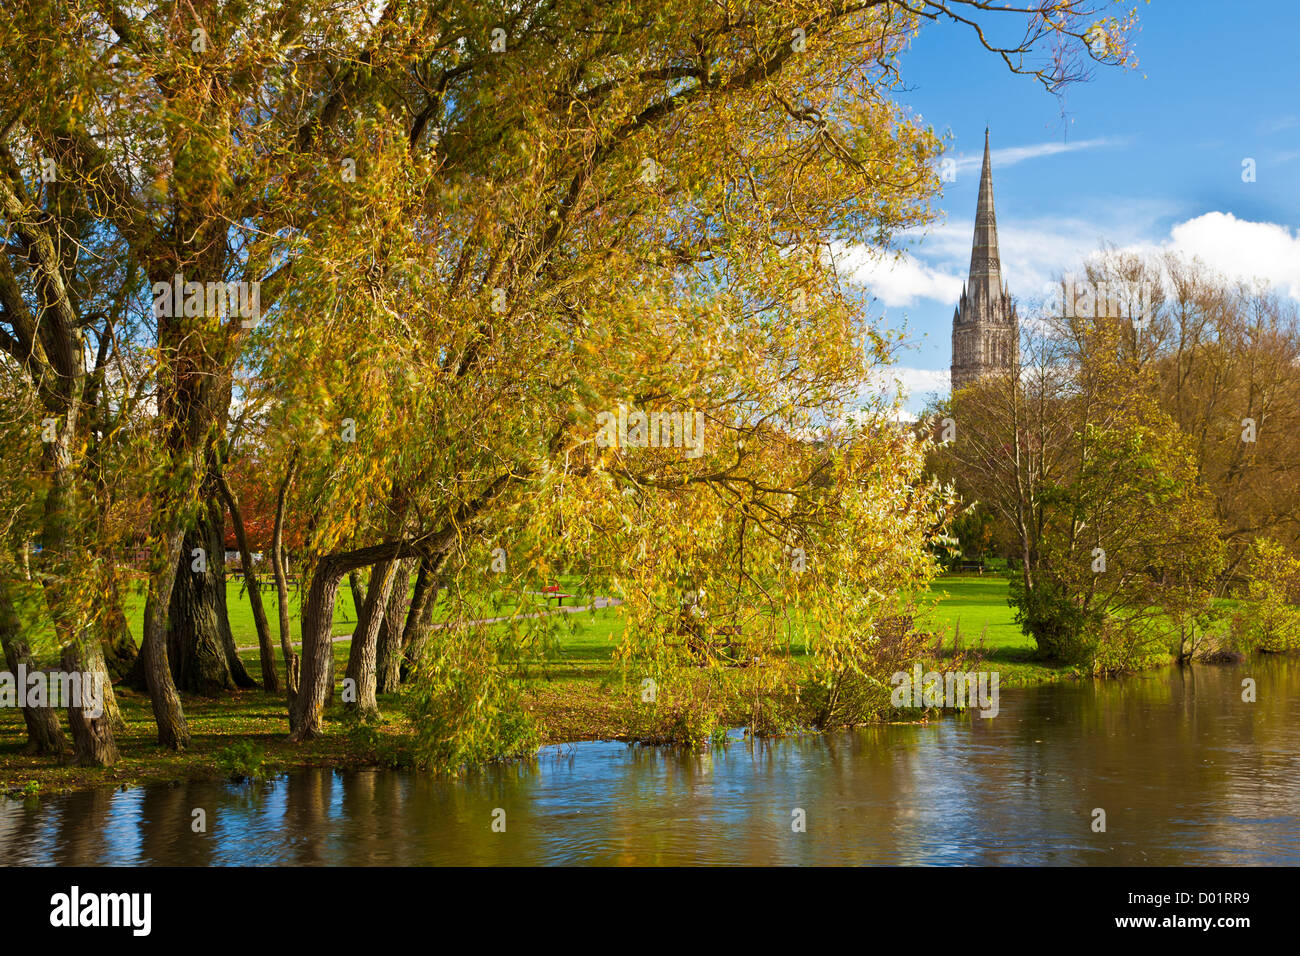 Ein Herbst Blick auf den Turm der mittelalterlichen Kathedrale von Salisbury, Wiltshire, England, UK mit dem Fluss Avon im Vordergrund. Stockfoto